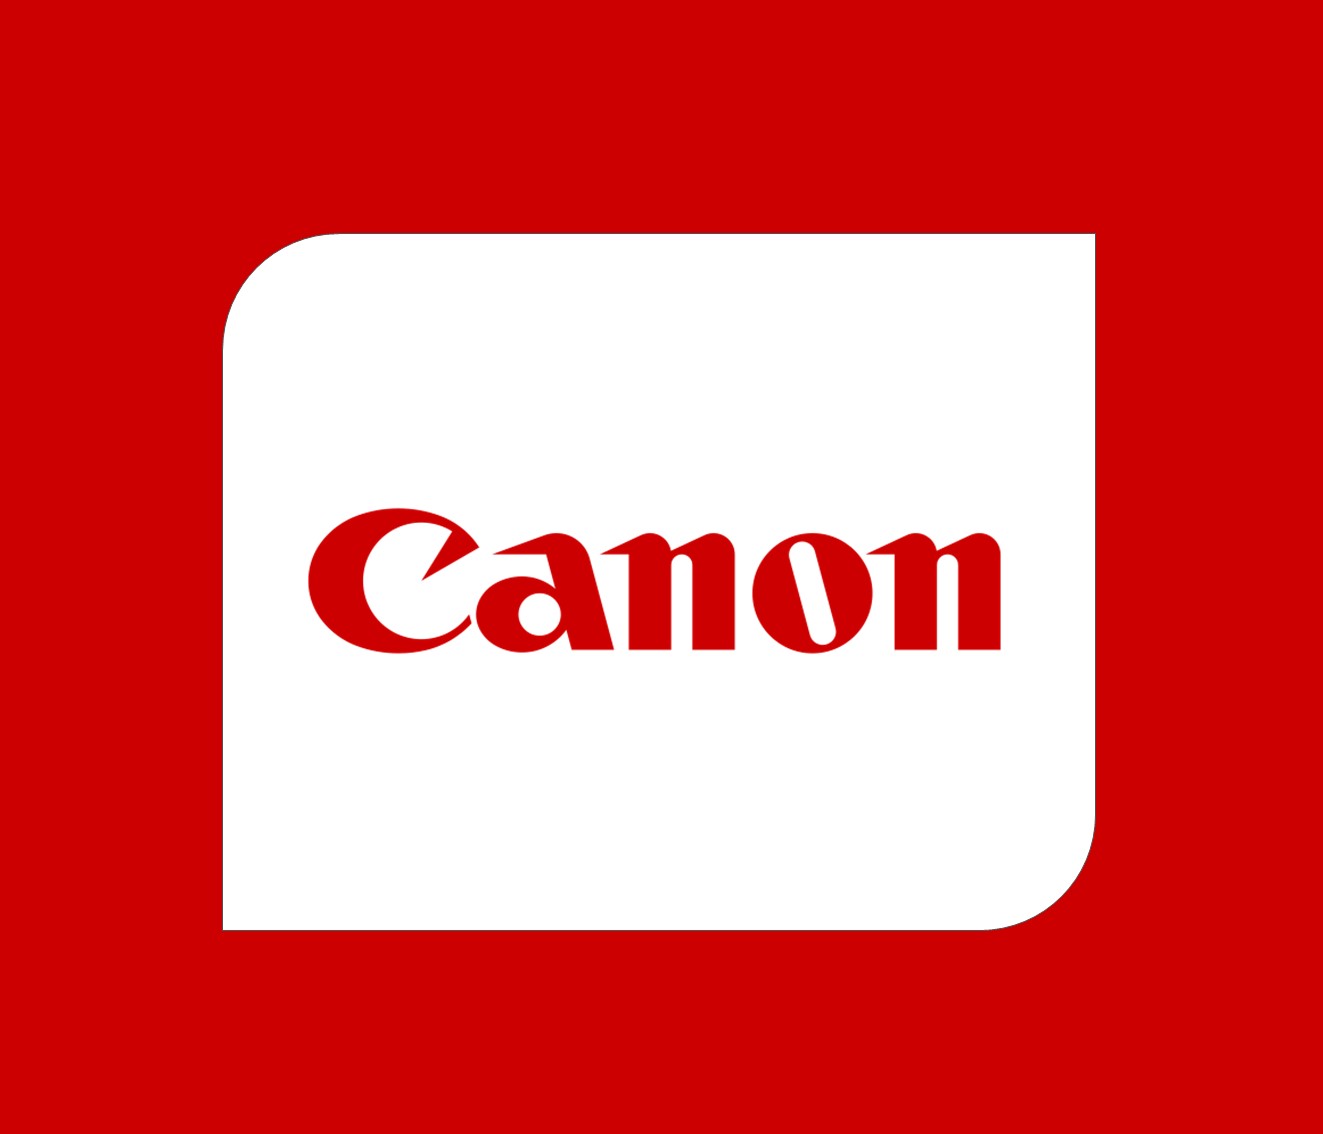 Canon Jobs